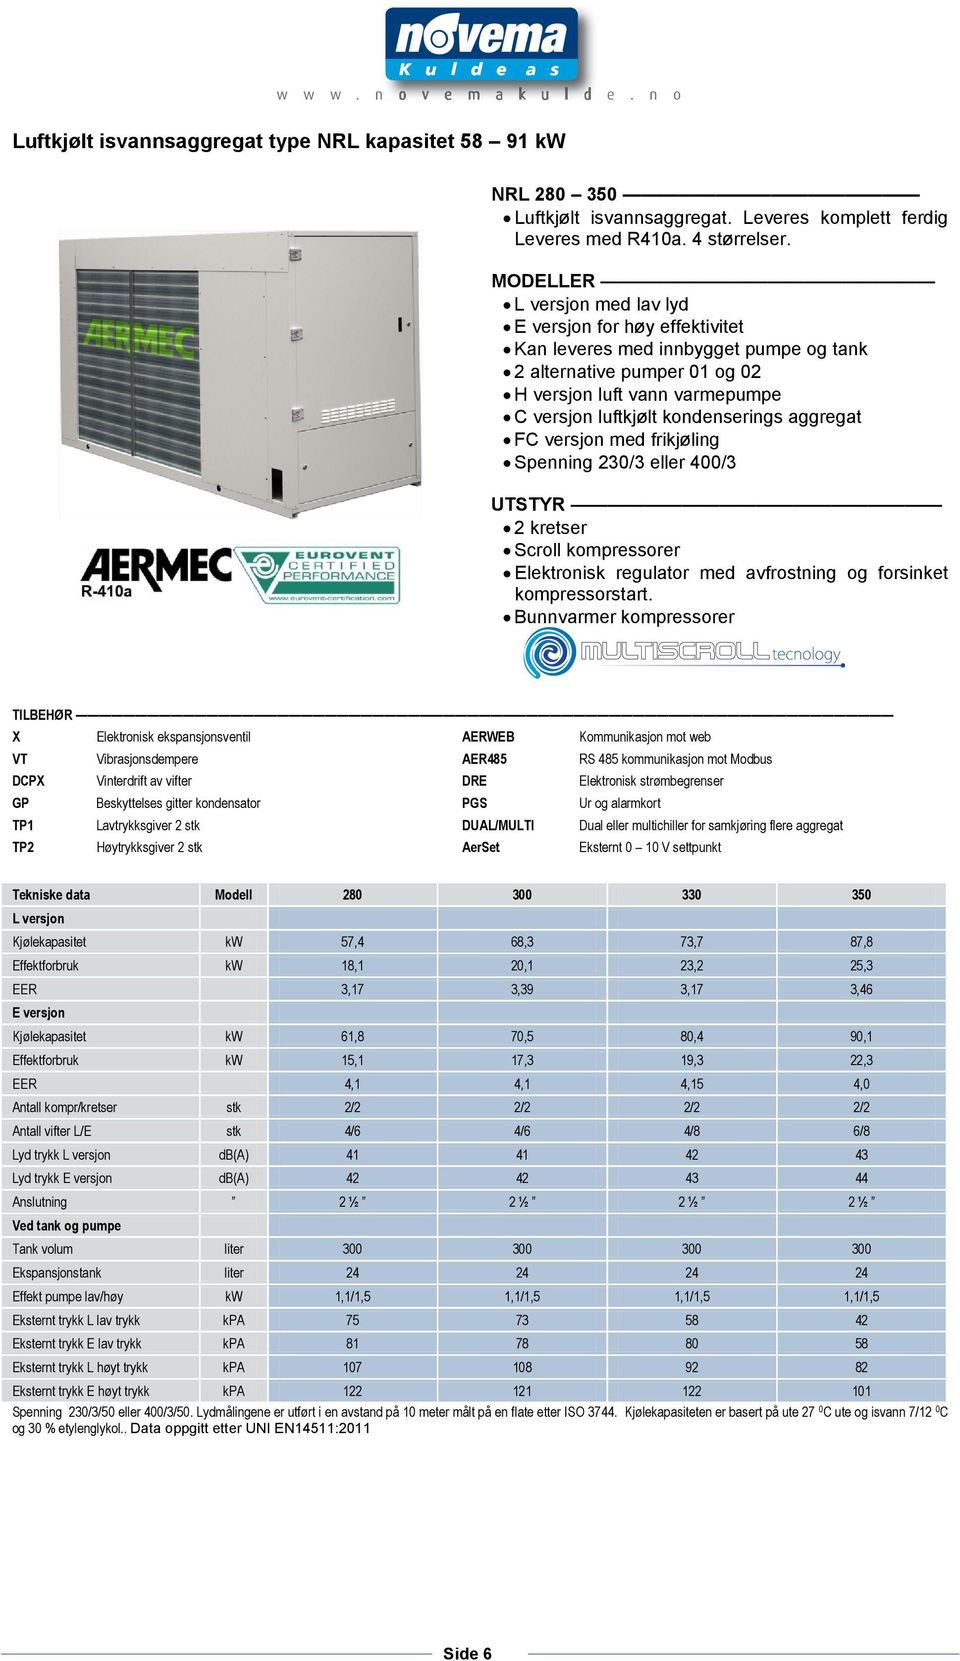 aggregat FC versjon med frikjøling Spenning 230/3 eller 400/3 UTSTYR 2 kretser Scroll kompressorer Elektronisk regulator med avfrostning og forsinket kompressorstart.